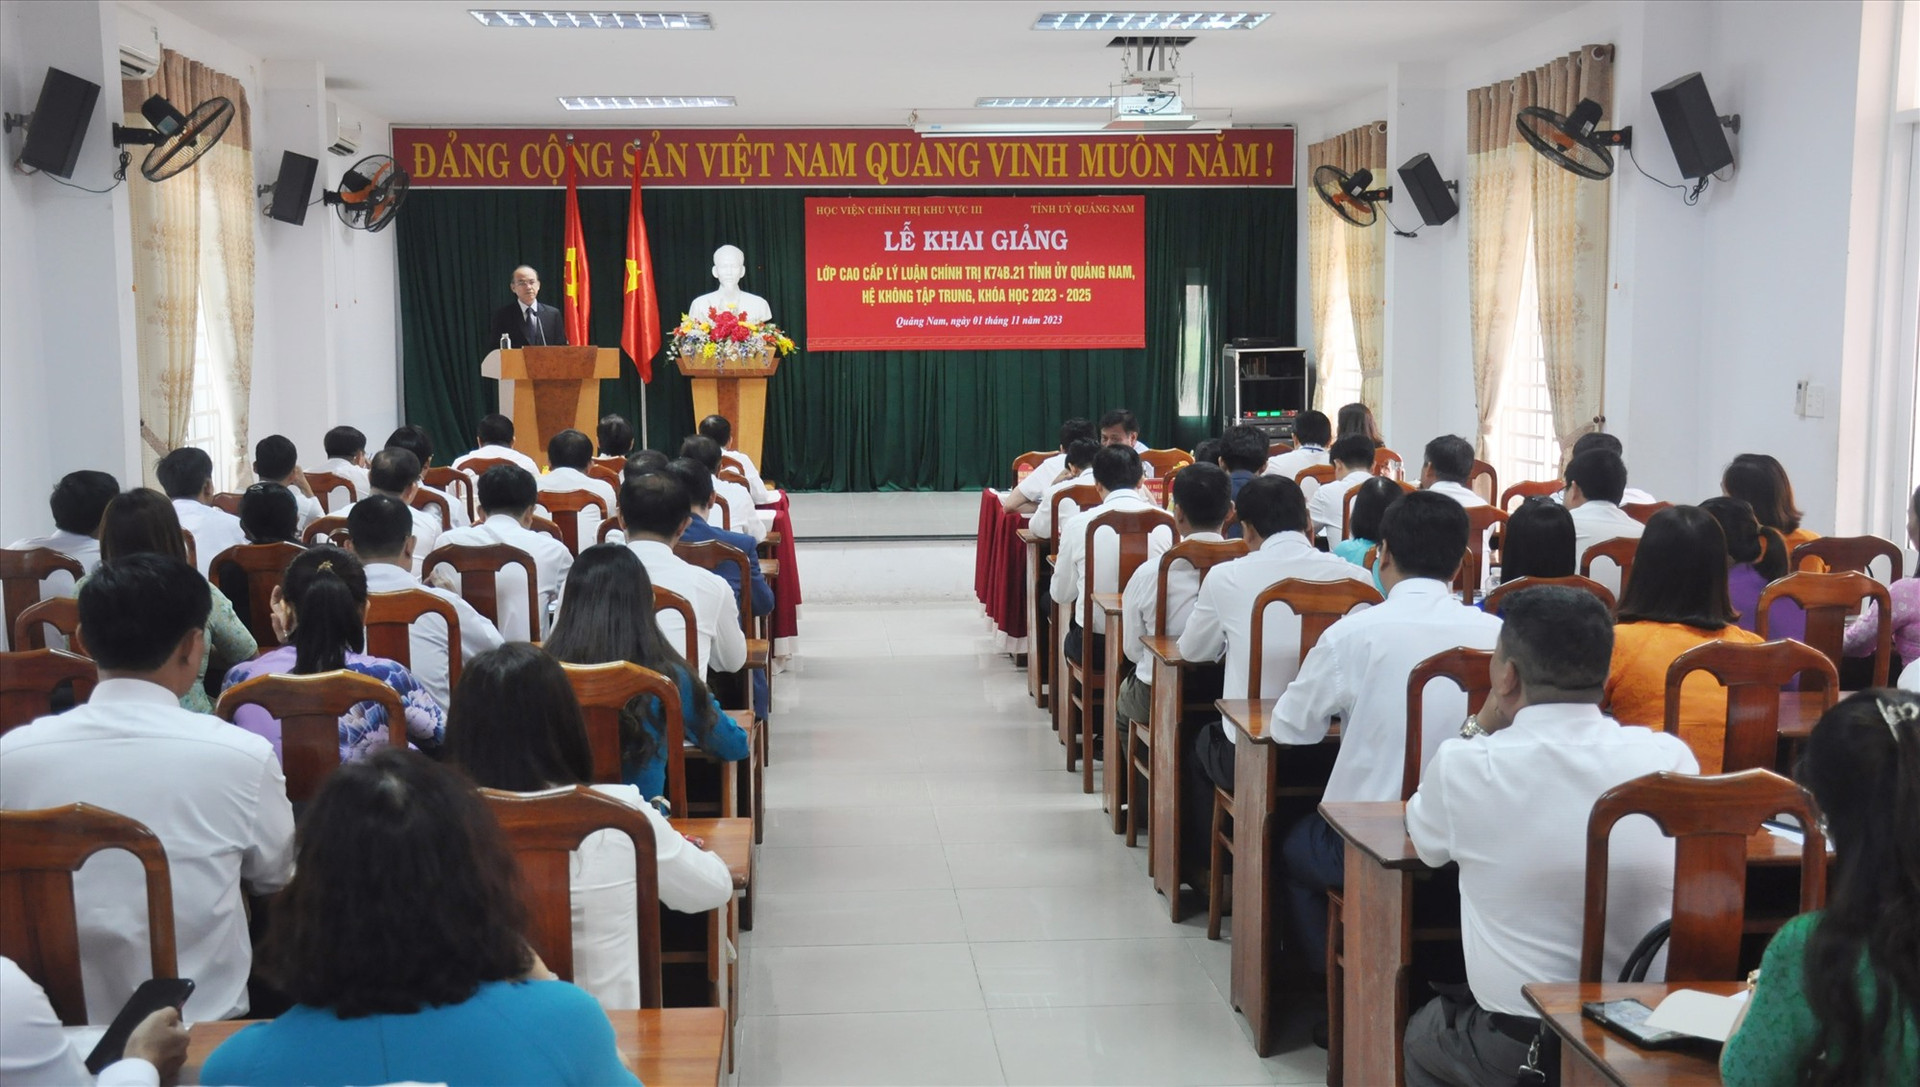 Tỉnh ủy vừa phối hợp với Học viện Chính trị khu vực III tại Đà Nẵng khai giảng lớp cao cấp lý luận chính trị hệ không tập trung khóa học 2023 – 2025. Ảnh: N.Đ